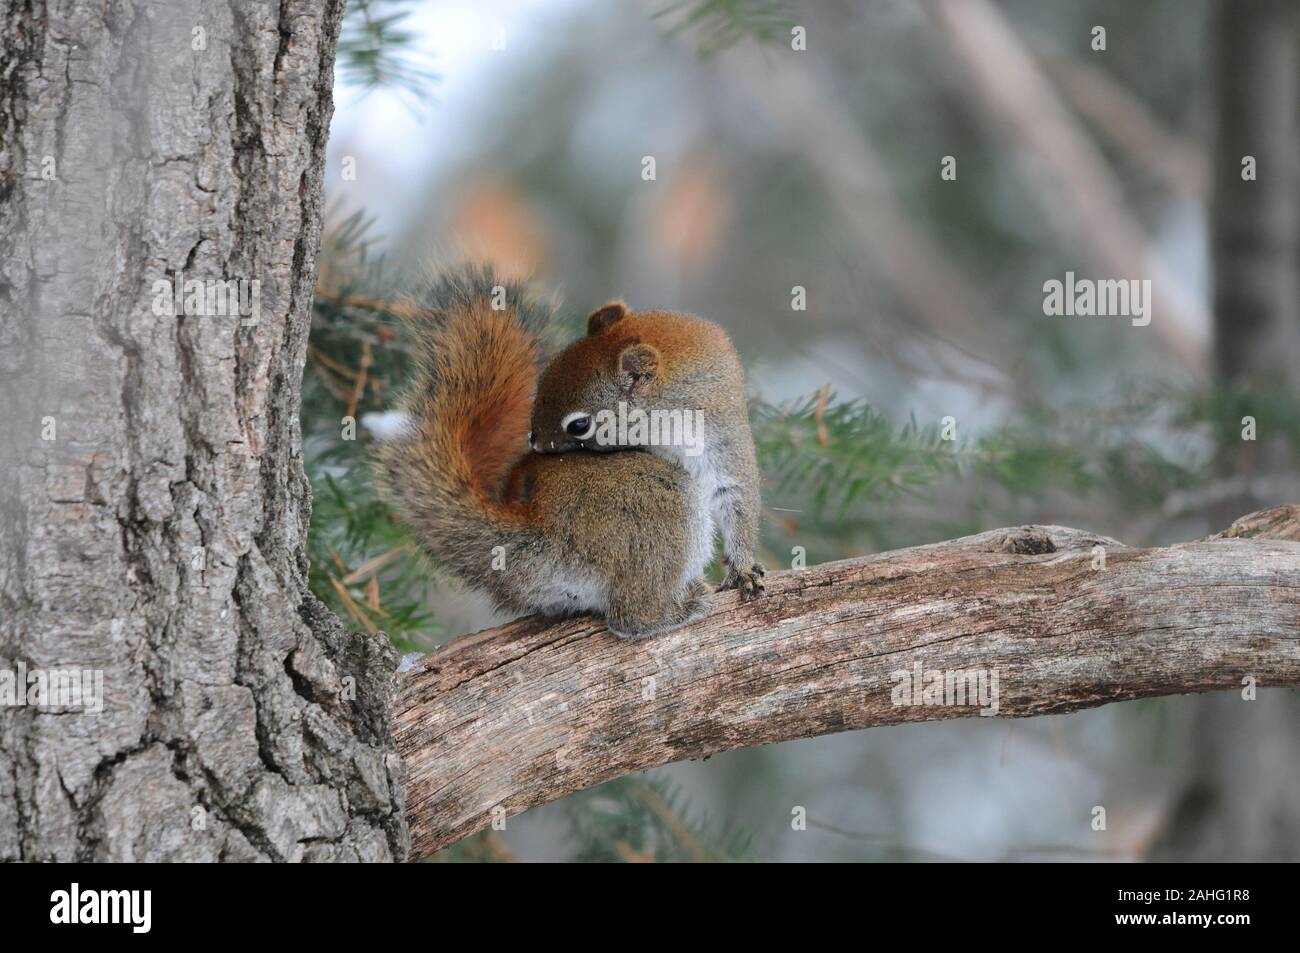 Eichhörnchen Tier close-up Profil anzeigen im Wald sitzt auf einem Ast Baum mit bokeh Hintergrund anzeigen sein braunes Fell, Kopf, Augen, Nase, Ohren, p Stockfoto